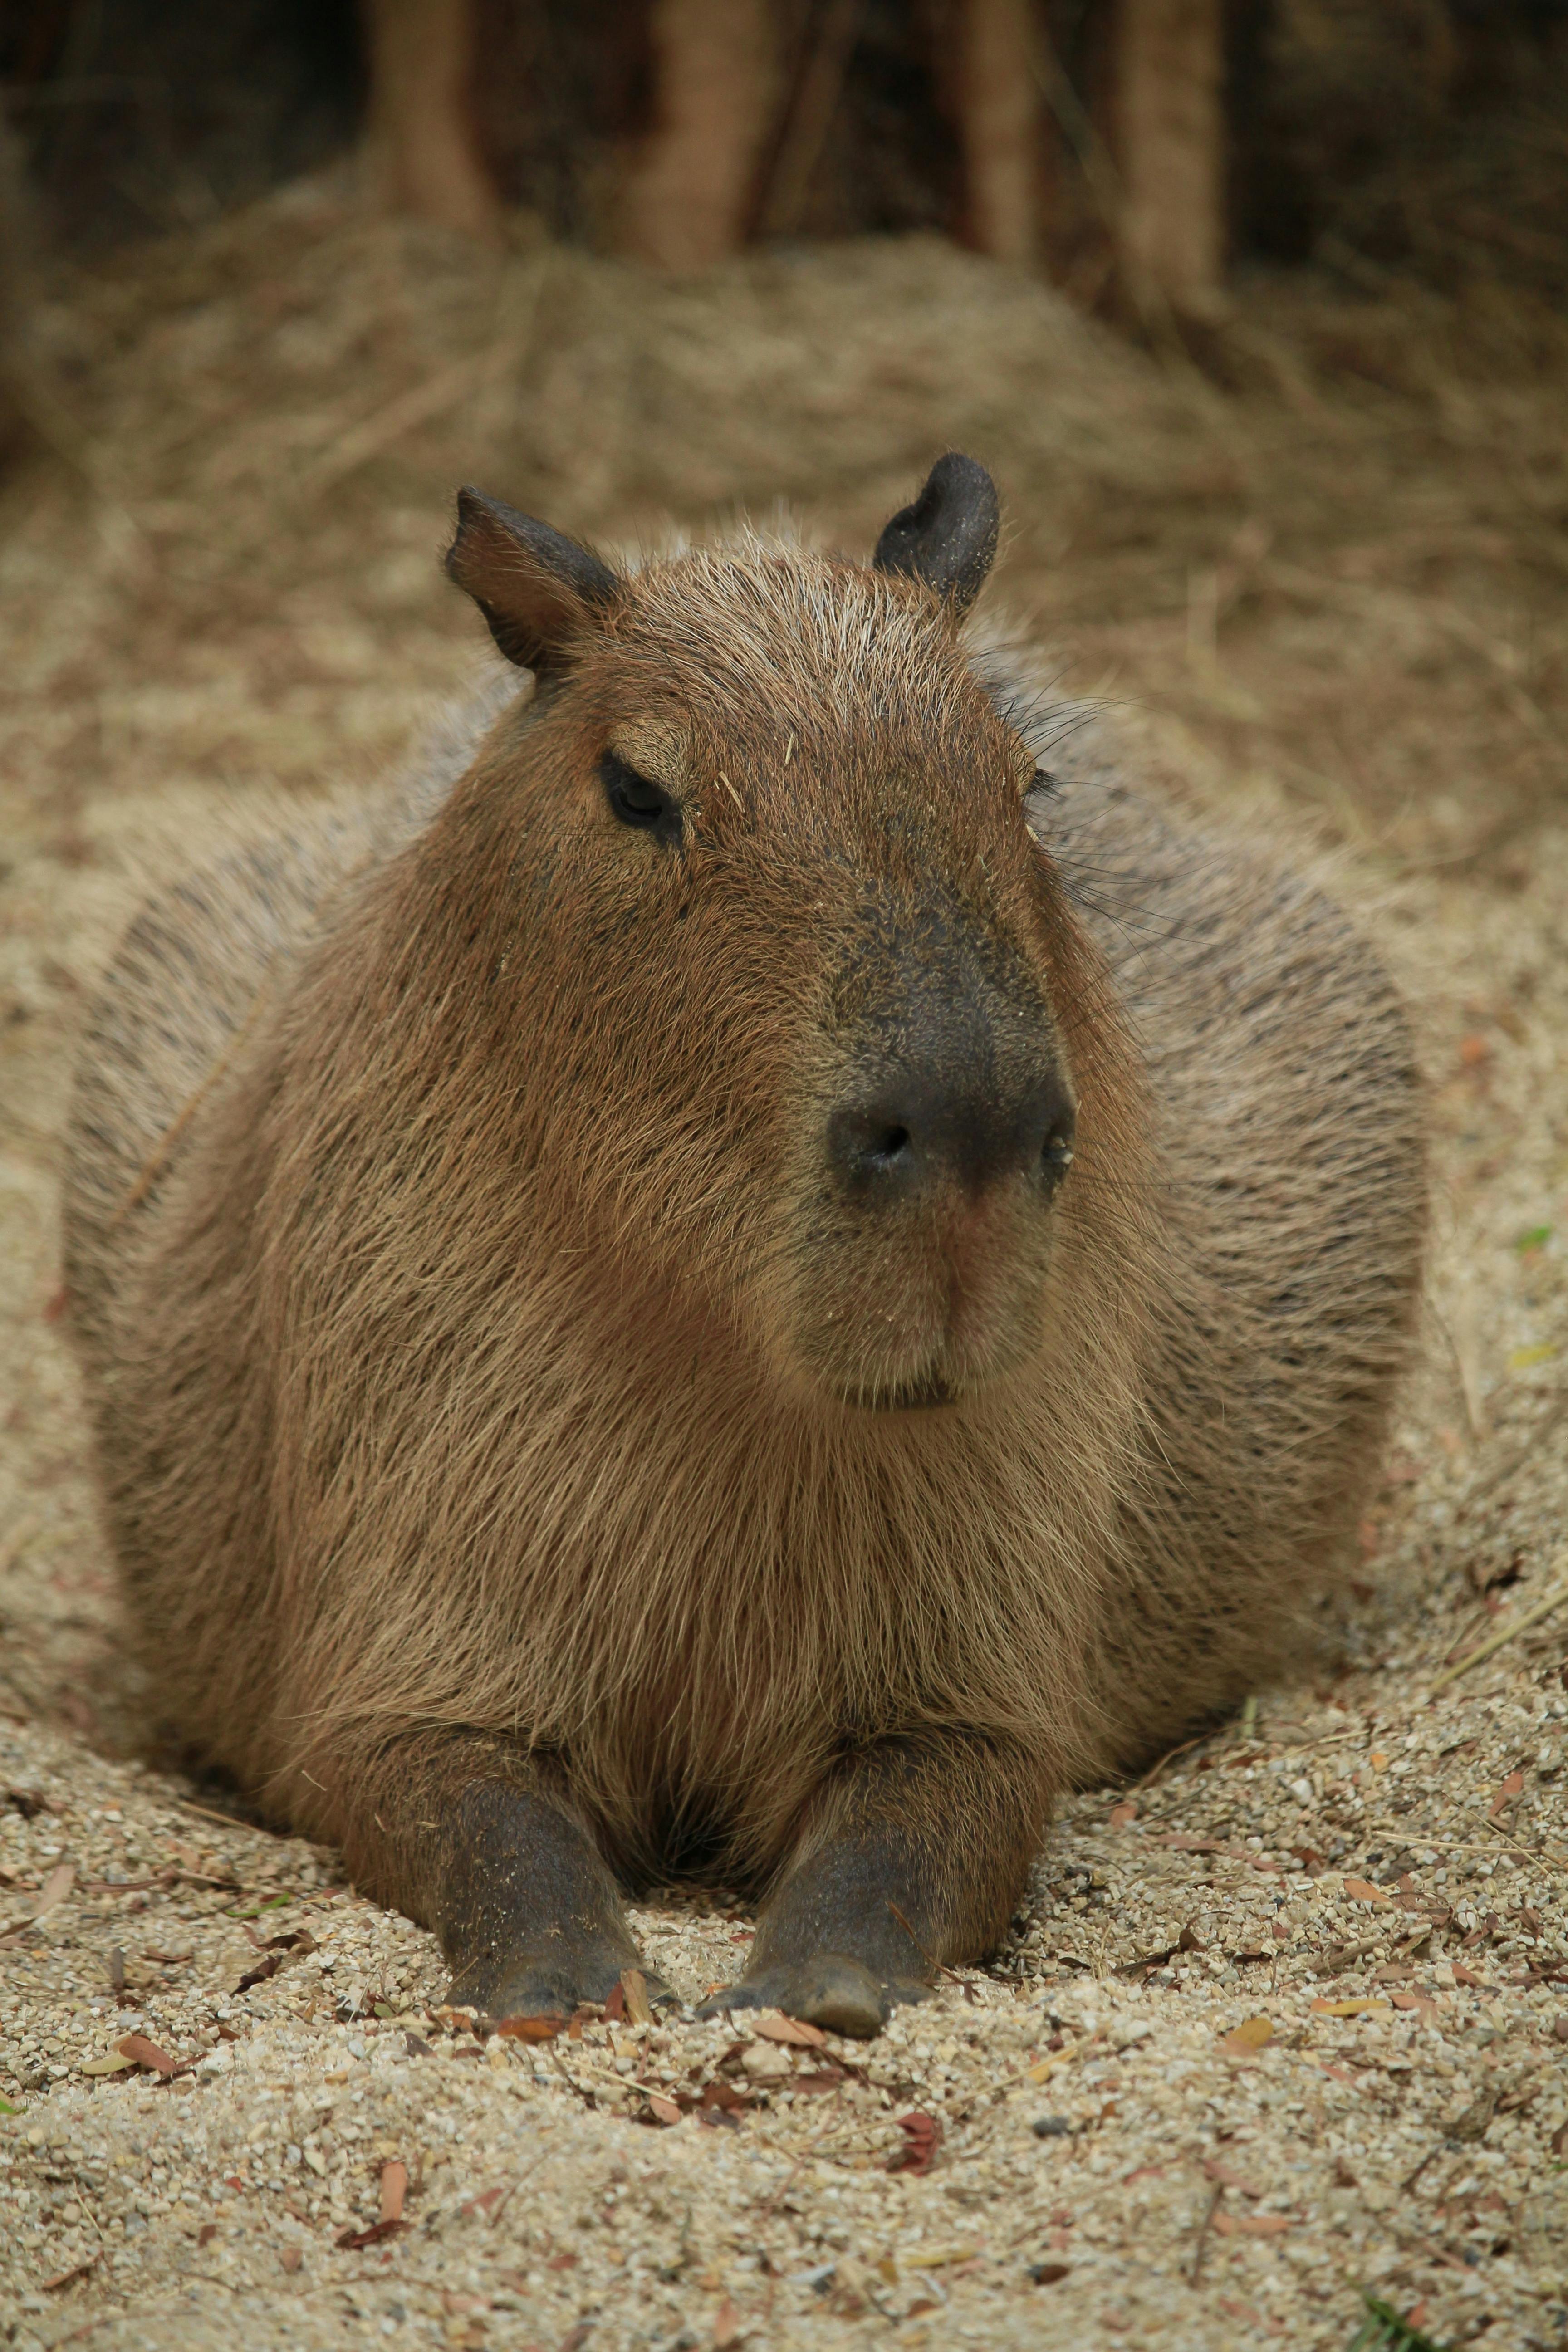 Capybara Photos, Download The BEST Free Capybara Stock Photos & HD Images